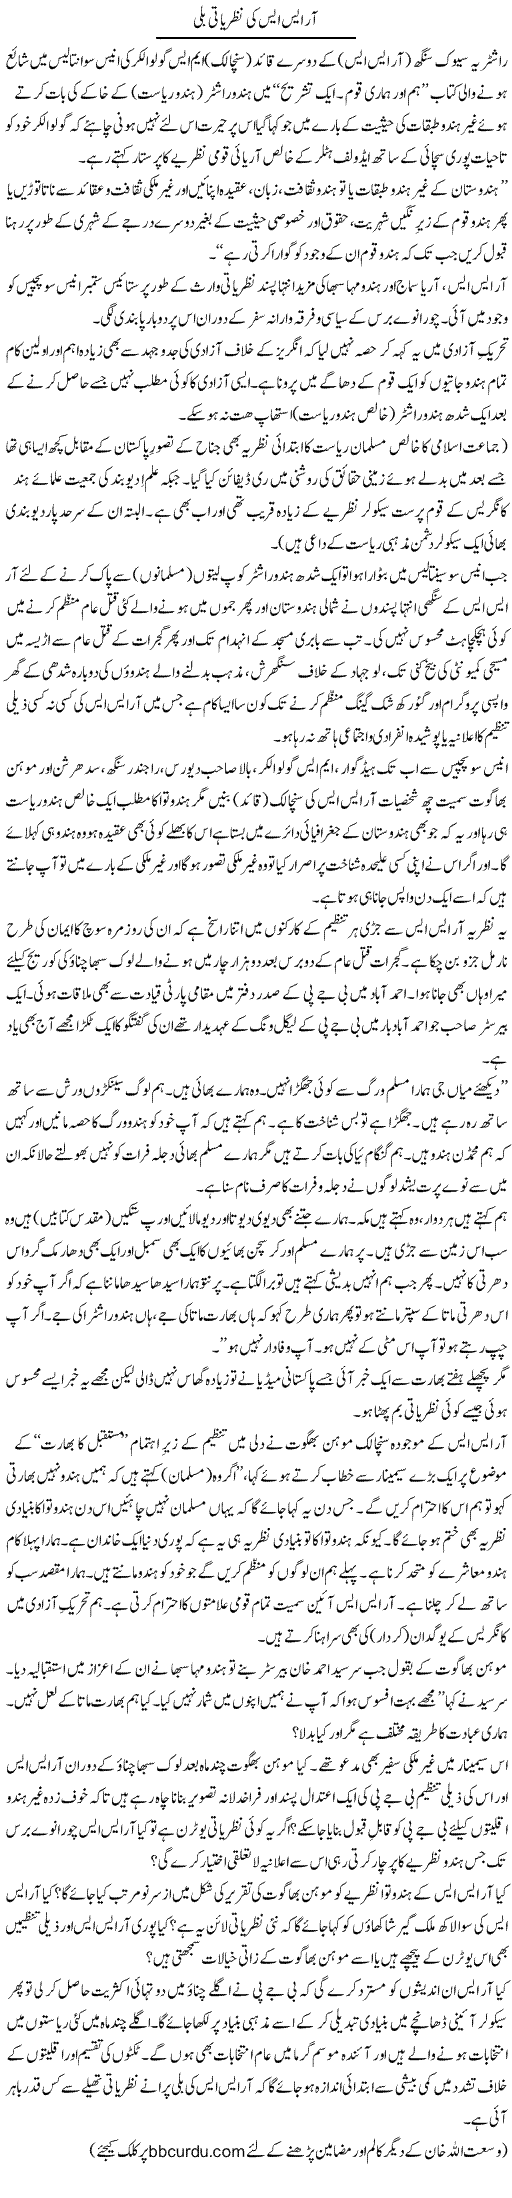 Rss Ki Nazriati Balli | Wusat Ullah Khan | Daily Urdu Columns